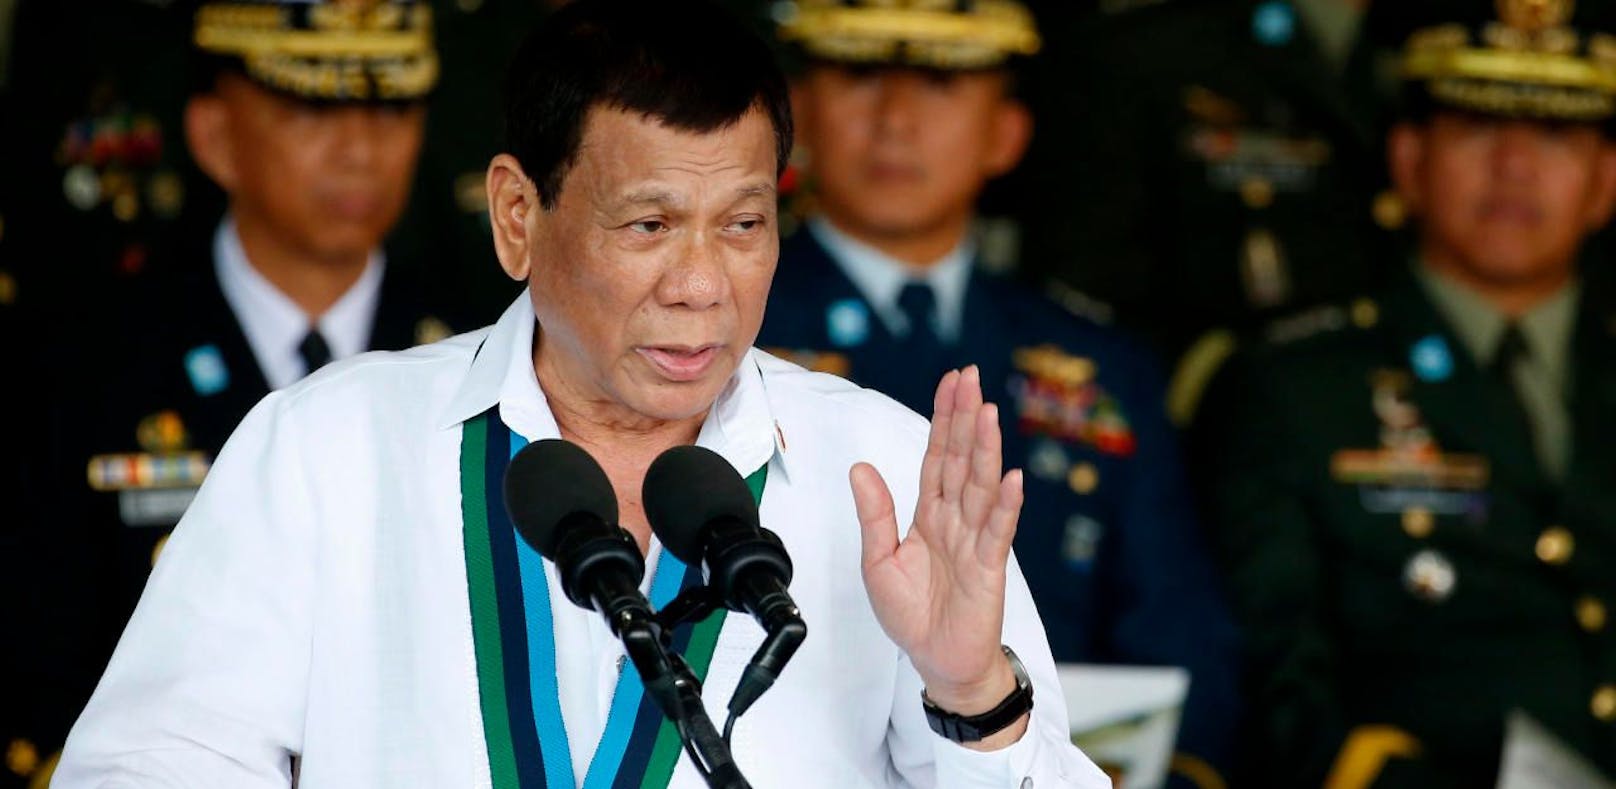 Der philippinische Präsident Rodrigo Duterte gab den Austritt aus dem Internationalen Strafgerichtshof bekannt